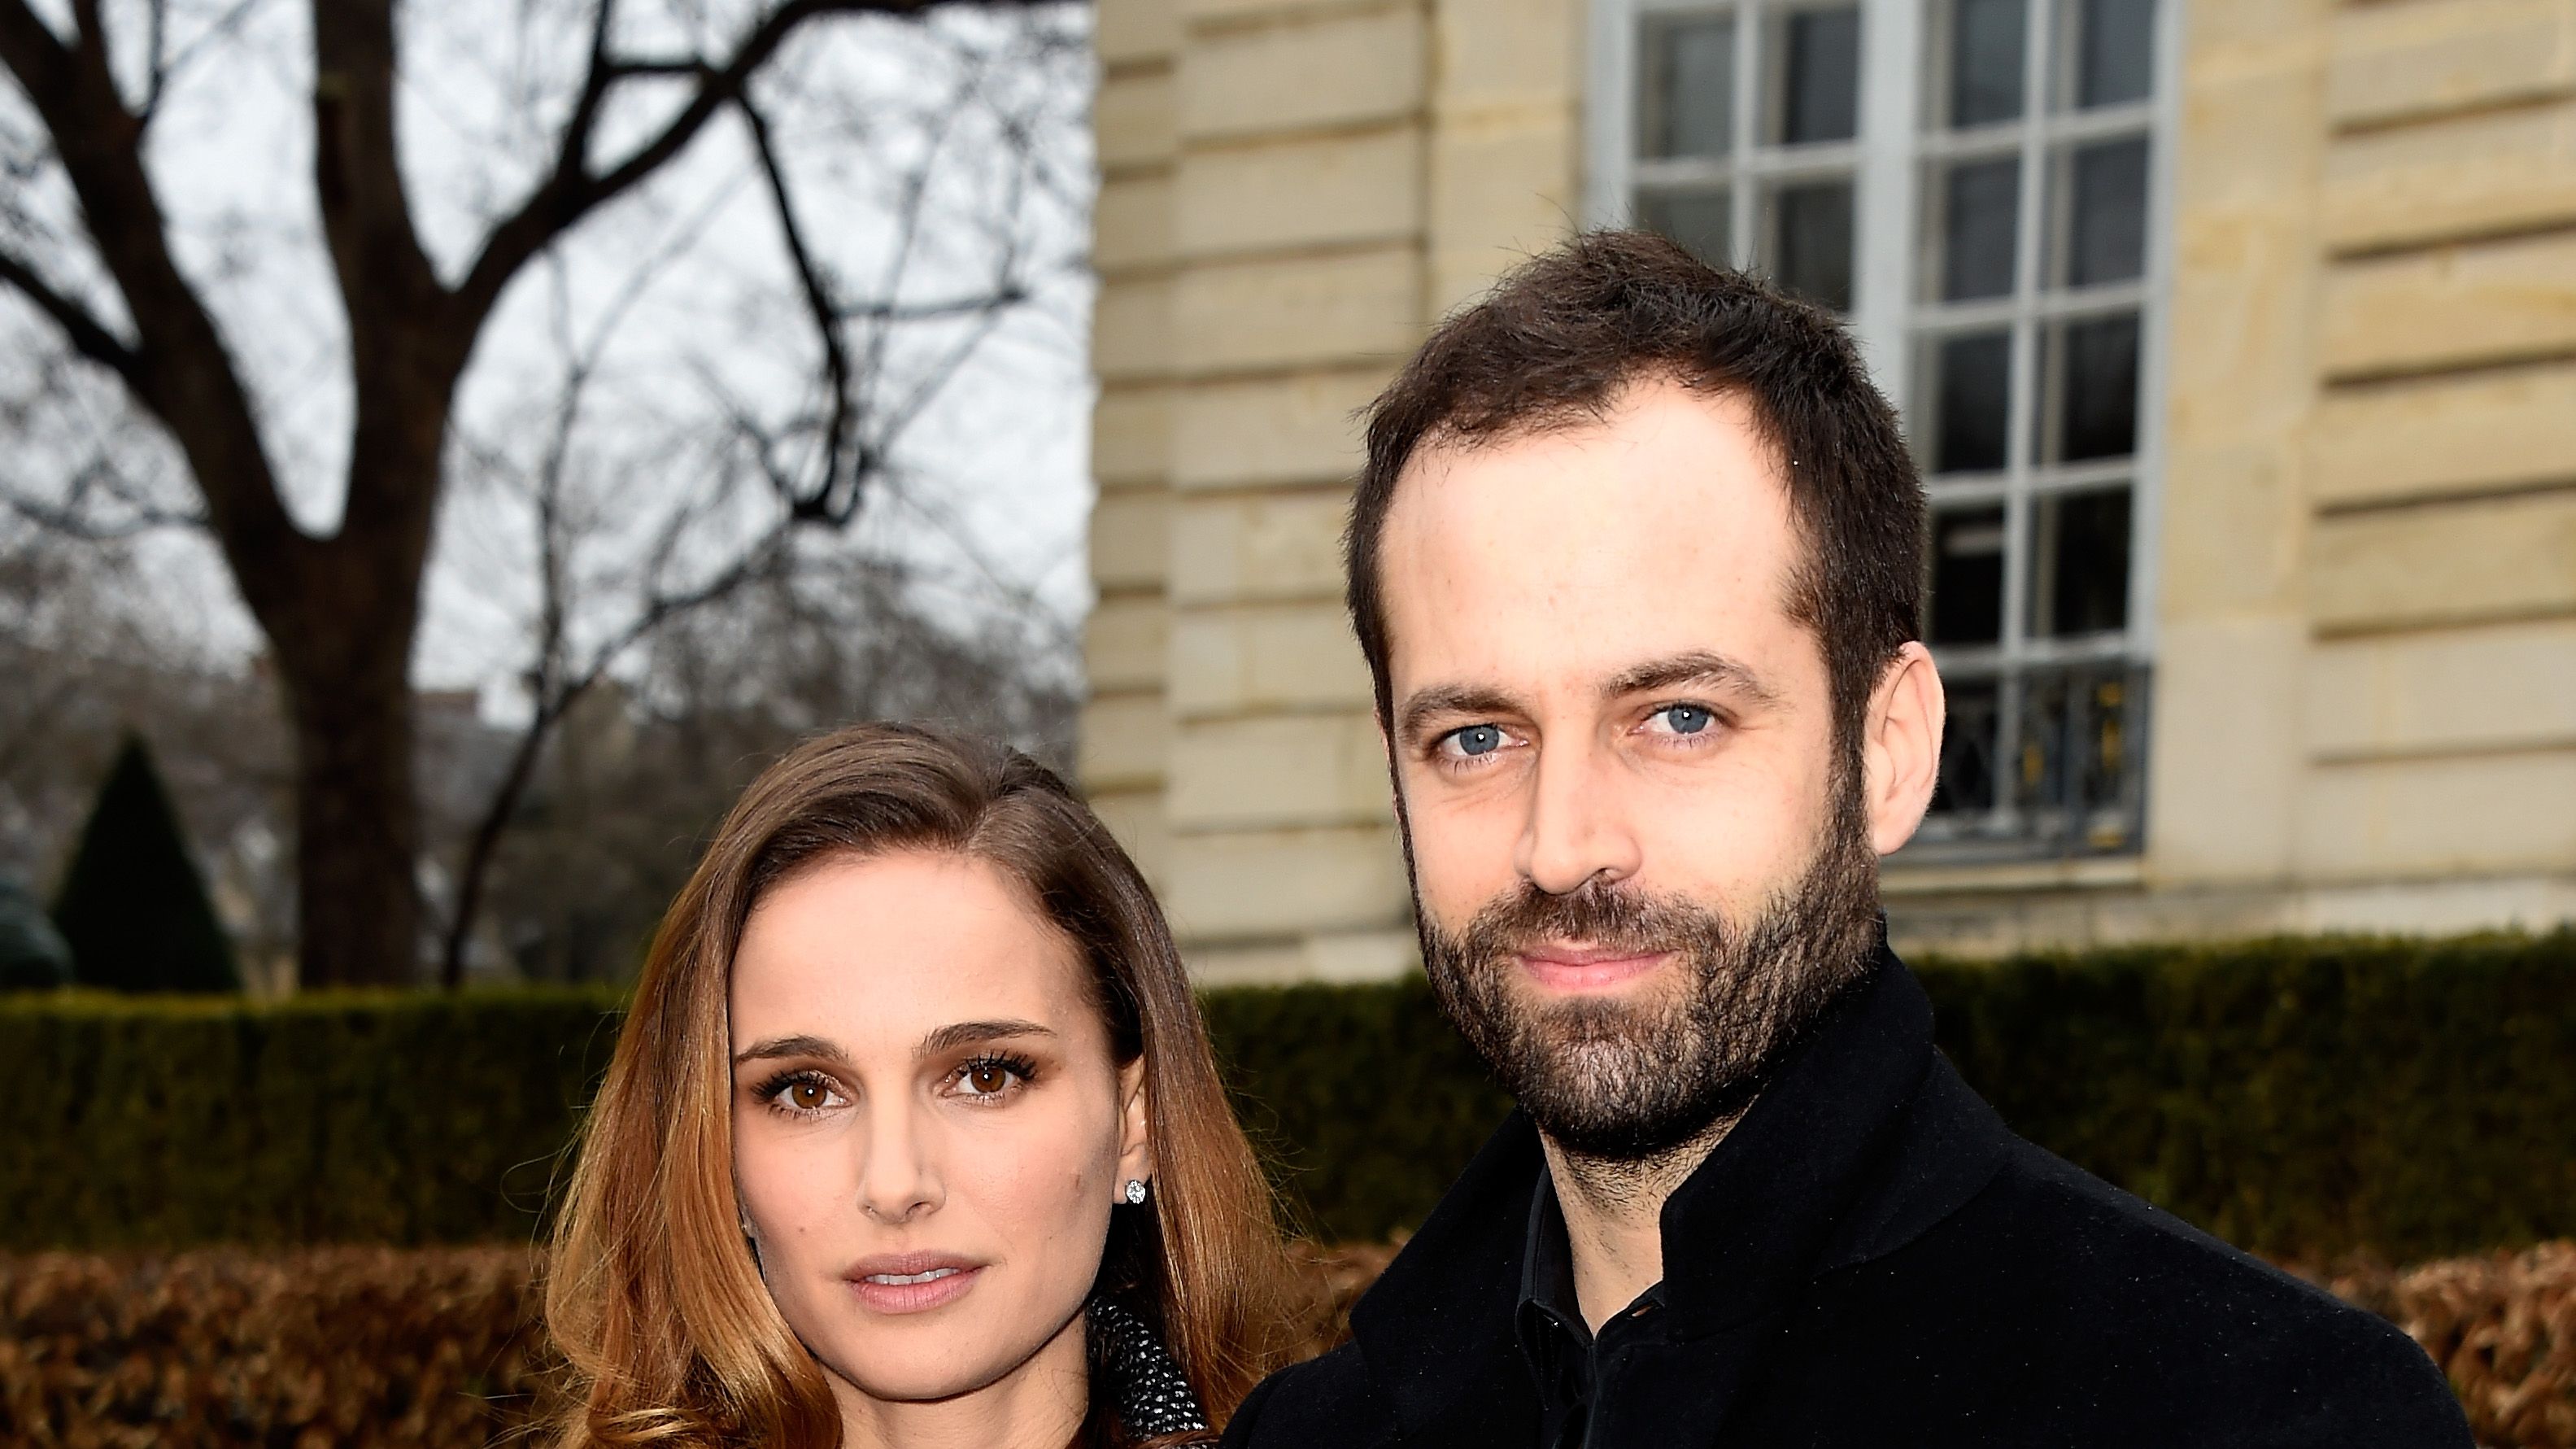 Natalie Portman and Benjamin Millepied's Relationship Timeline